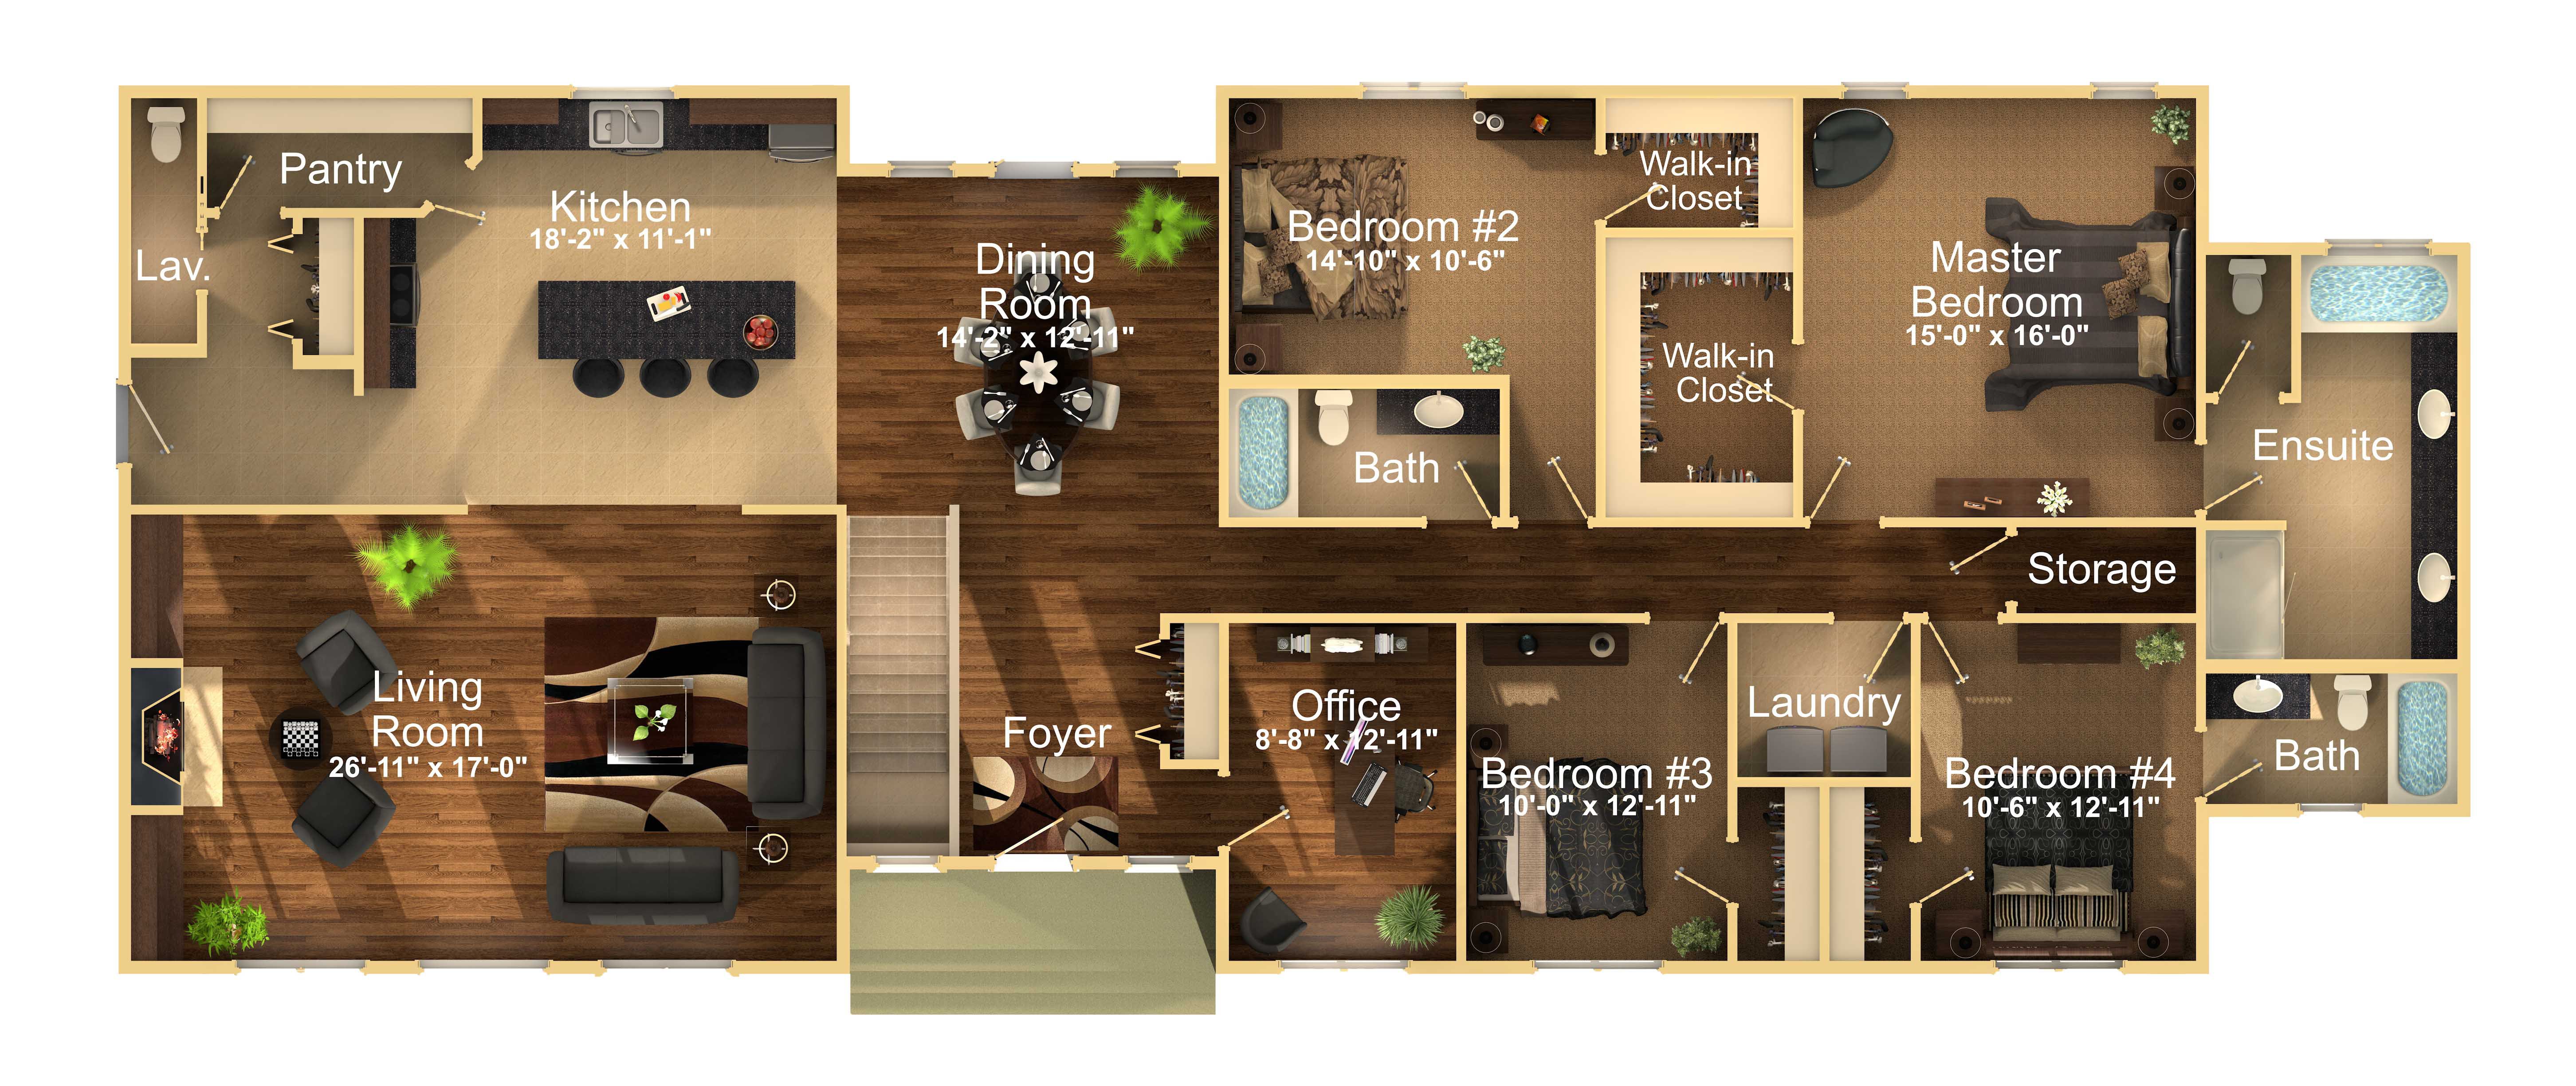 4 bedroom modular home plan nelson homes.jpg